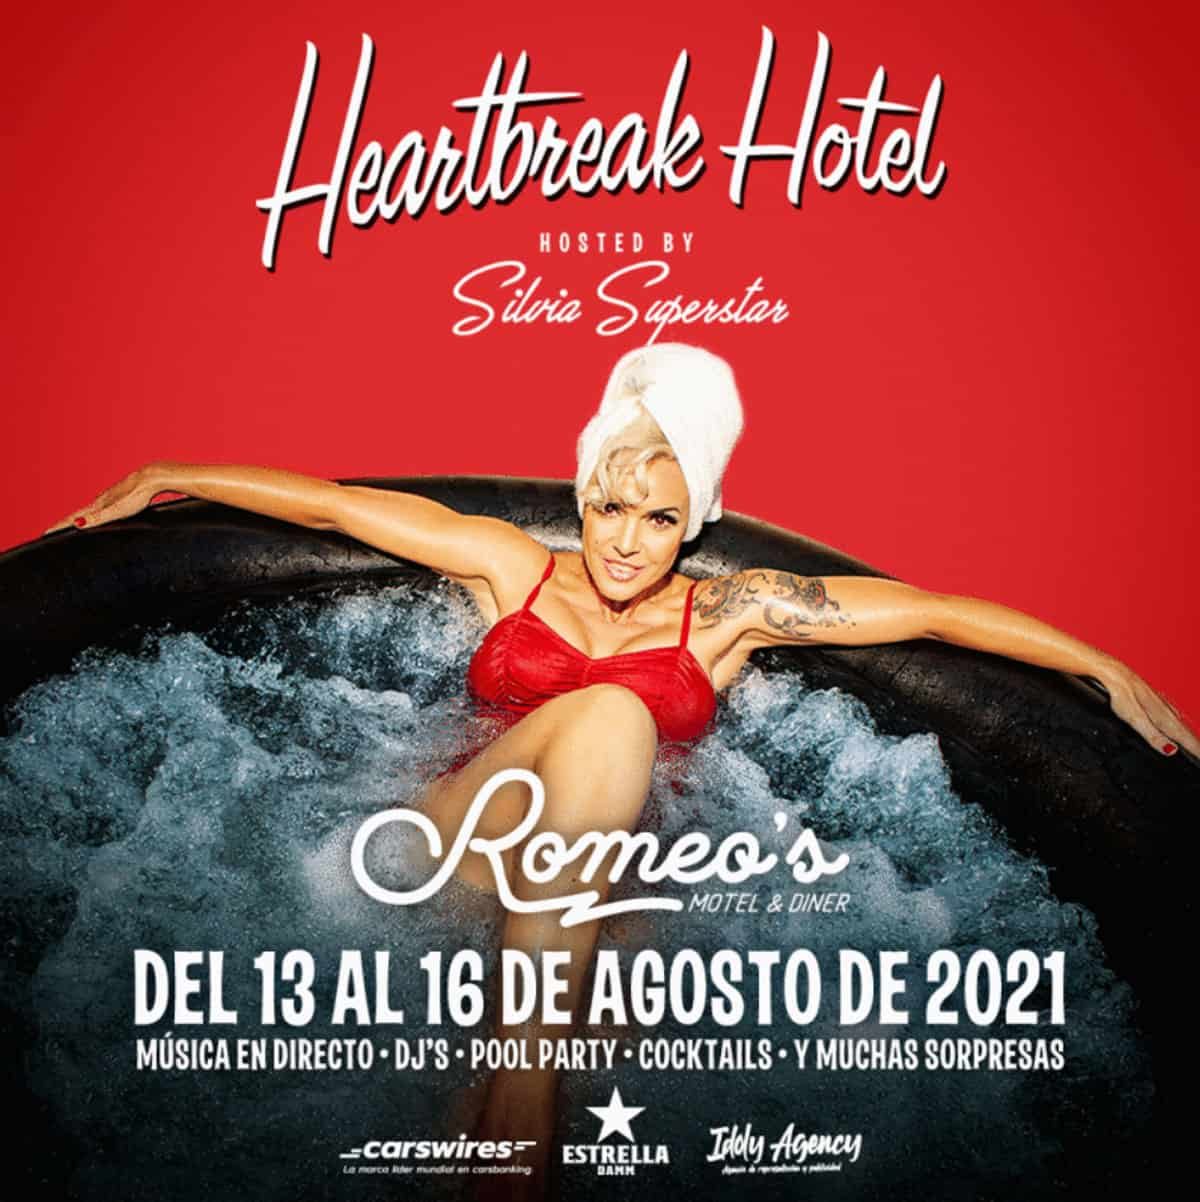 heartbreak-hotel-silvia-superstar-romeos-hotel-ibiza-2021-welcometoibiza